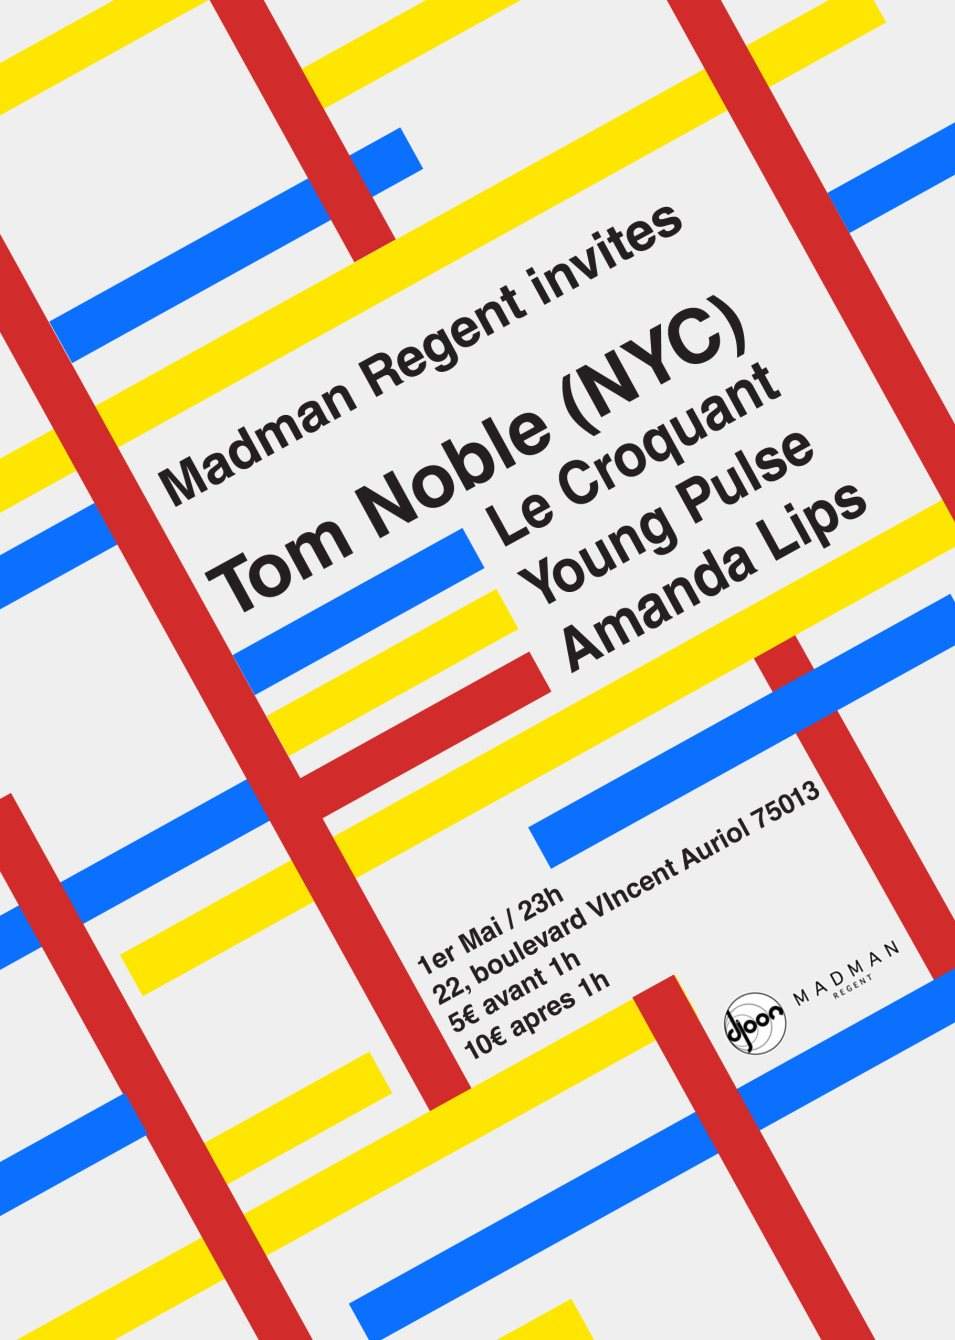 Madman Regent Invites Tom Noble (NYC) - Página trasera